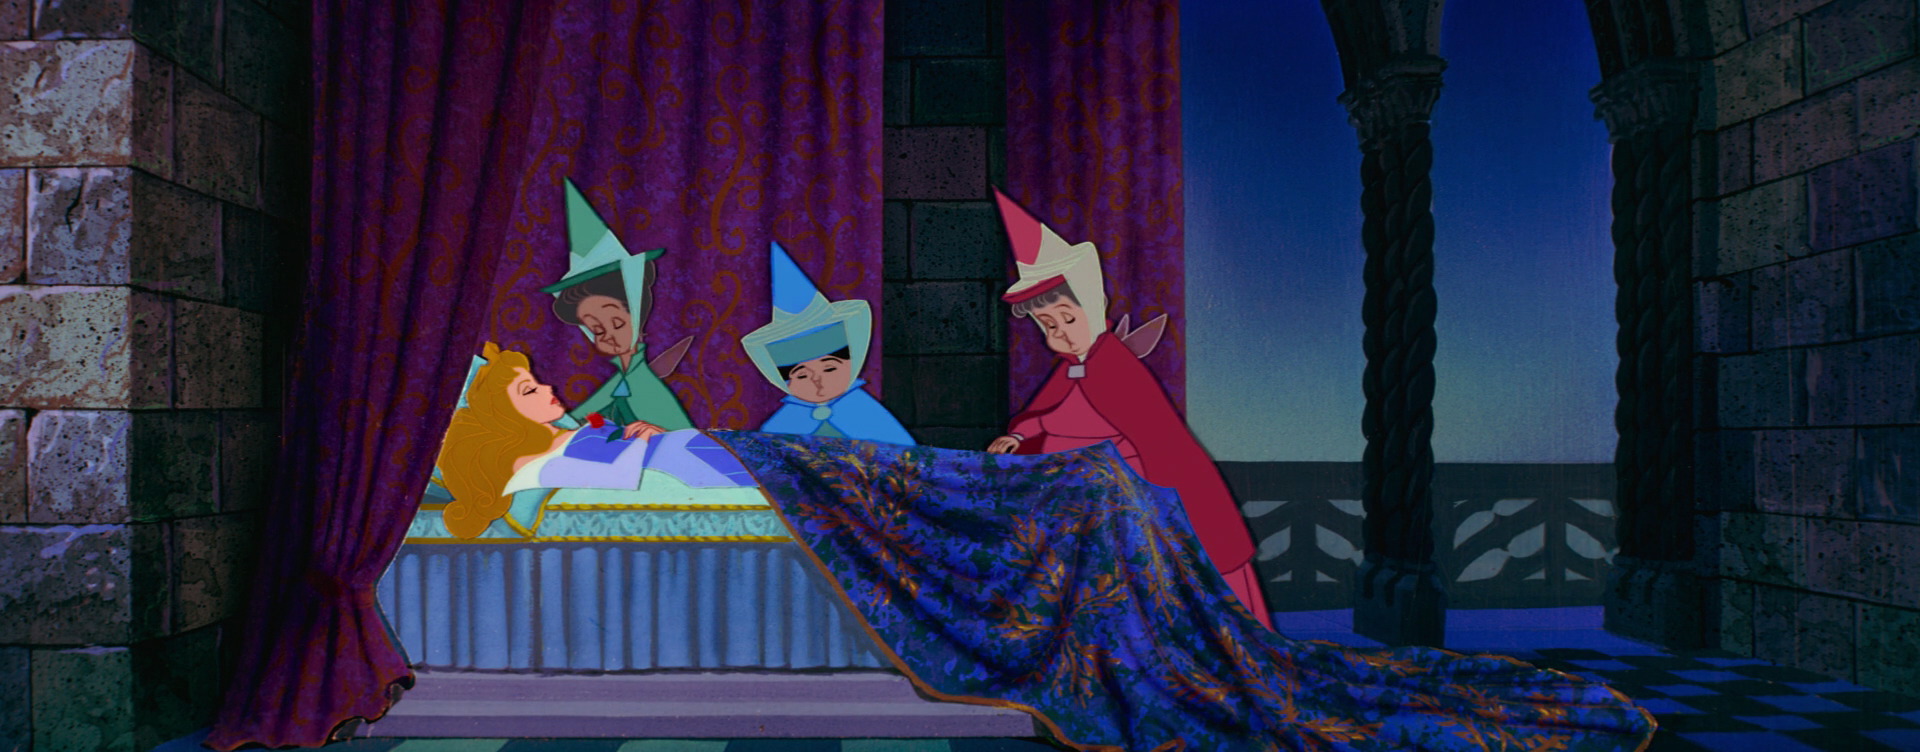 Sleeping Beauty Song Disney Wiki Fandom